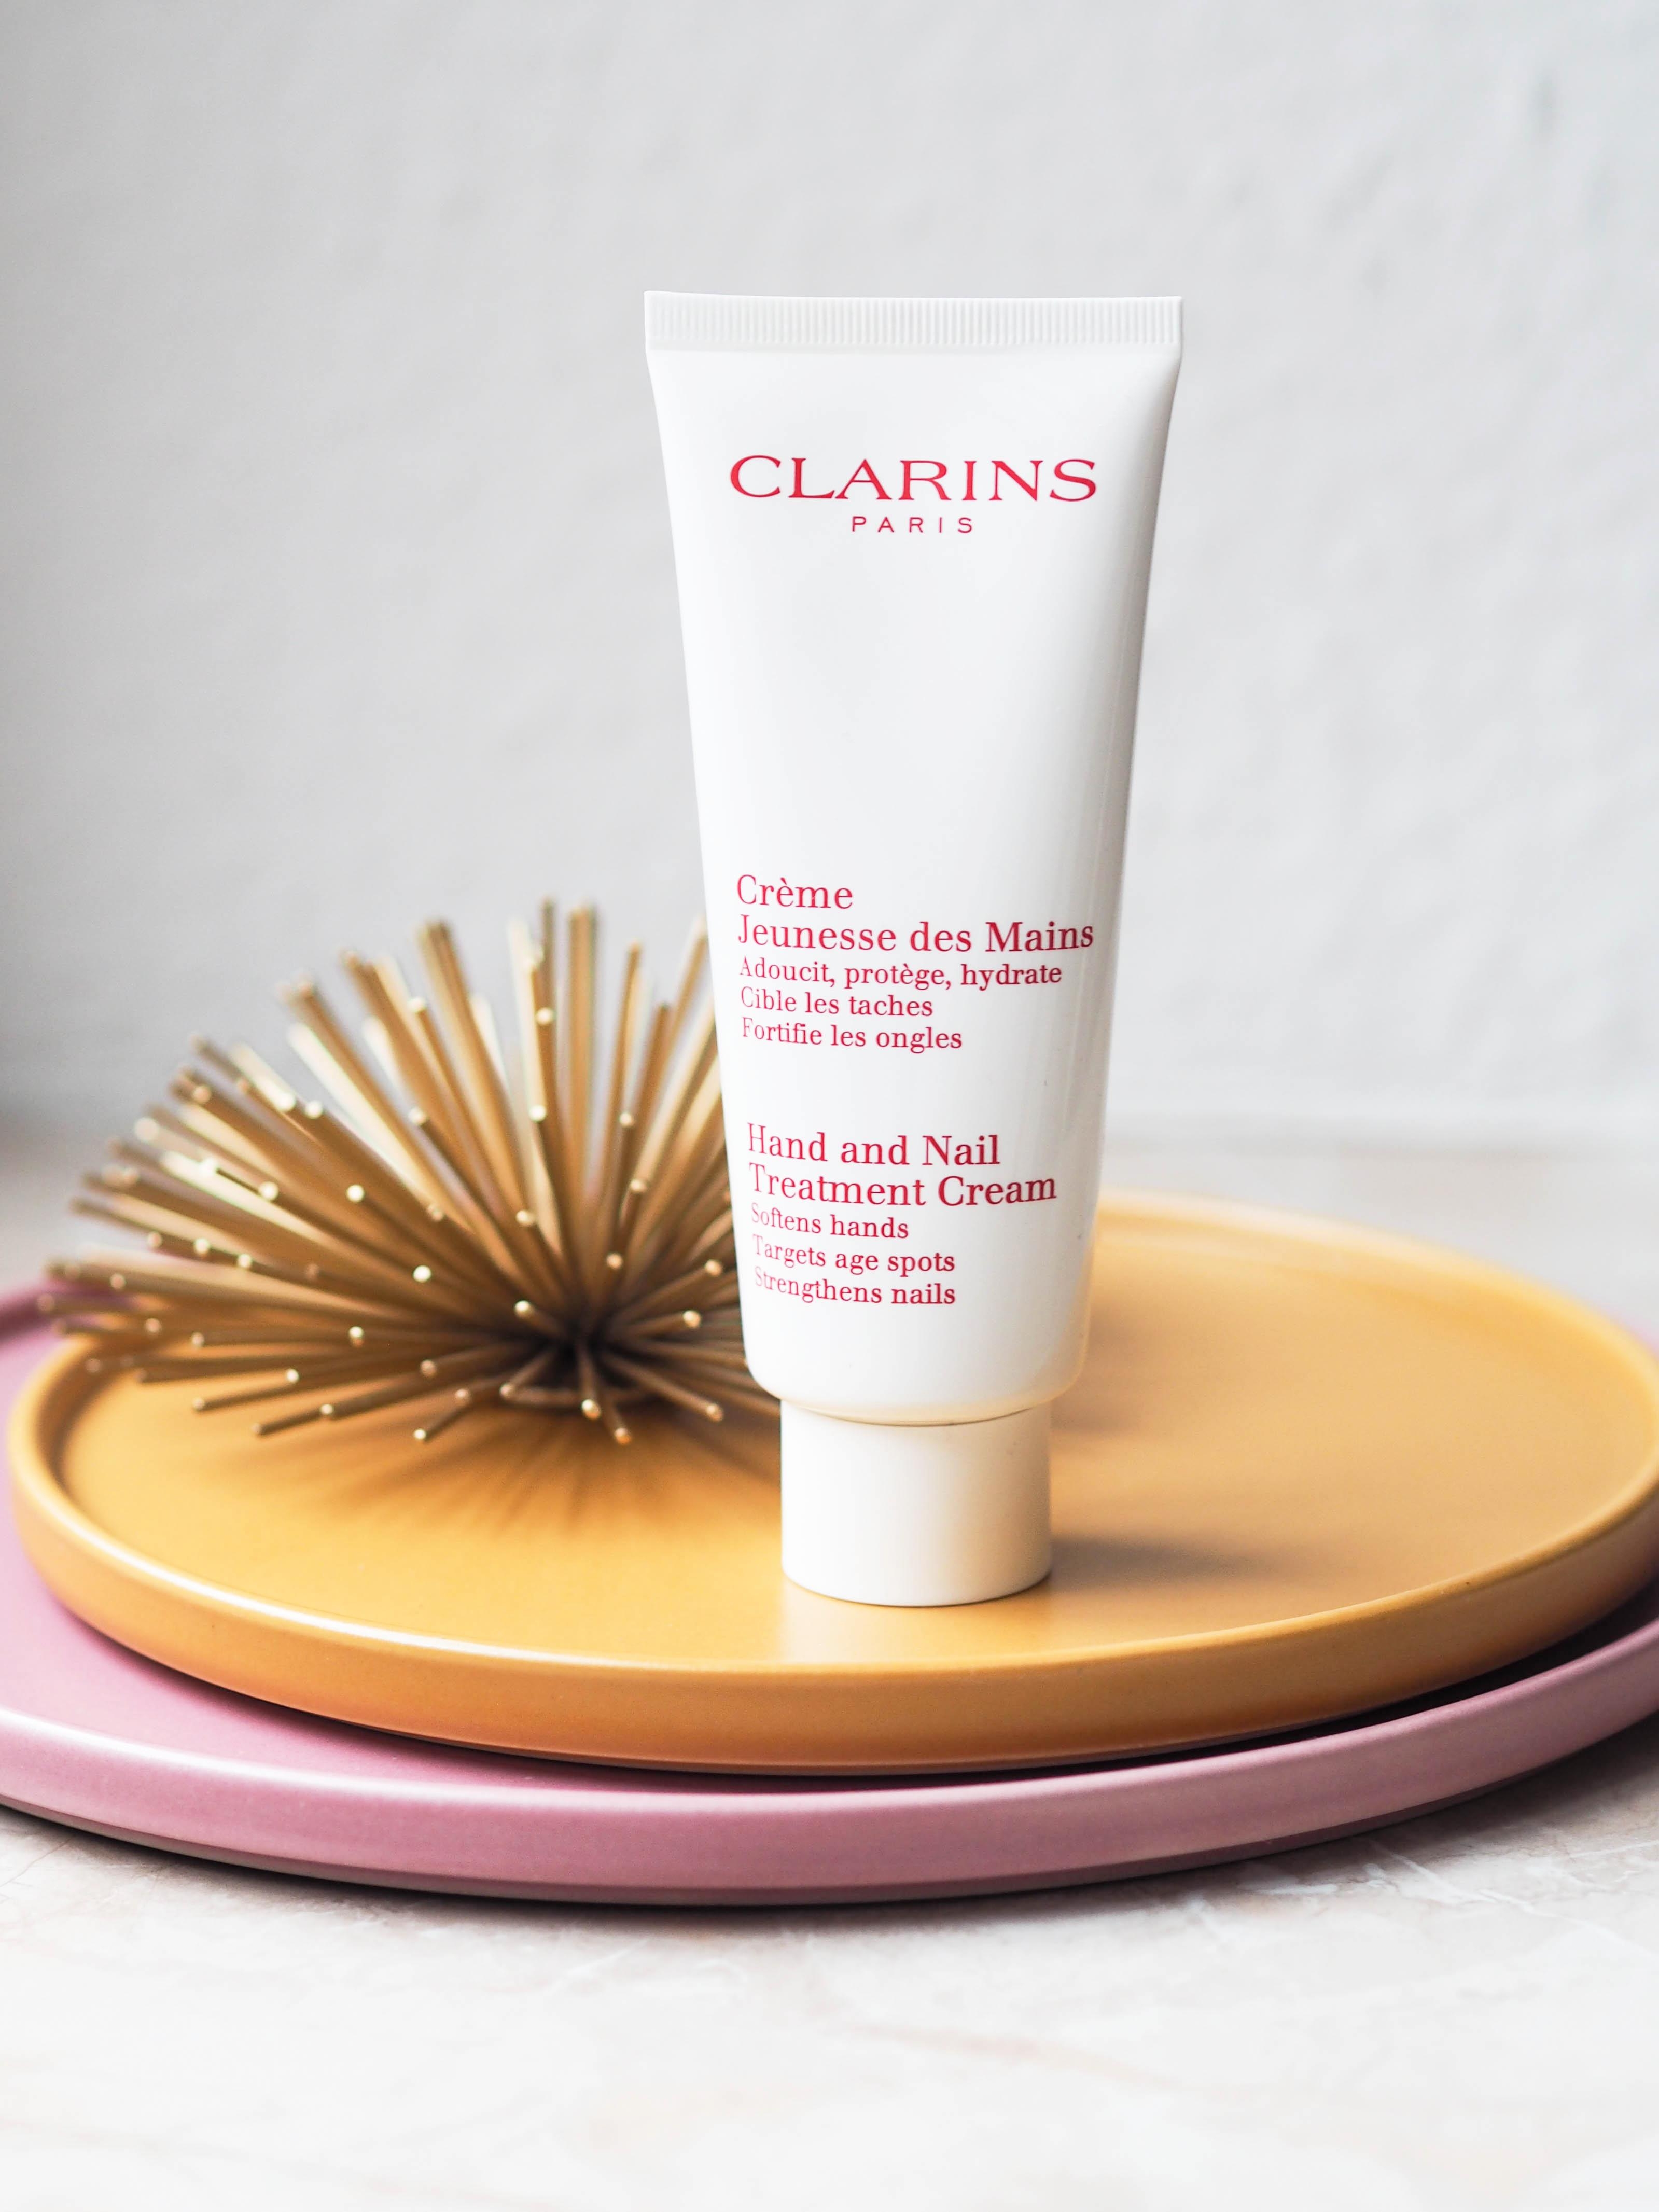 Brauchen wir bei eisiger Kälte unbedingt: Die Pflegecreme für Hände und Nägel von Clarins #beautylieblinge #clarins
